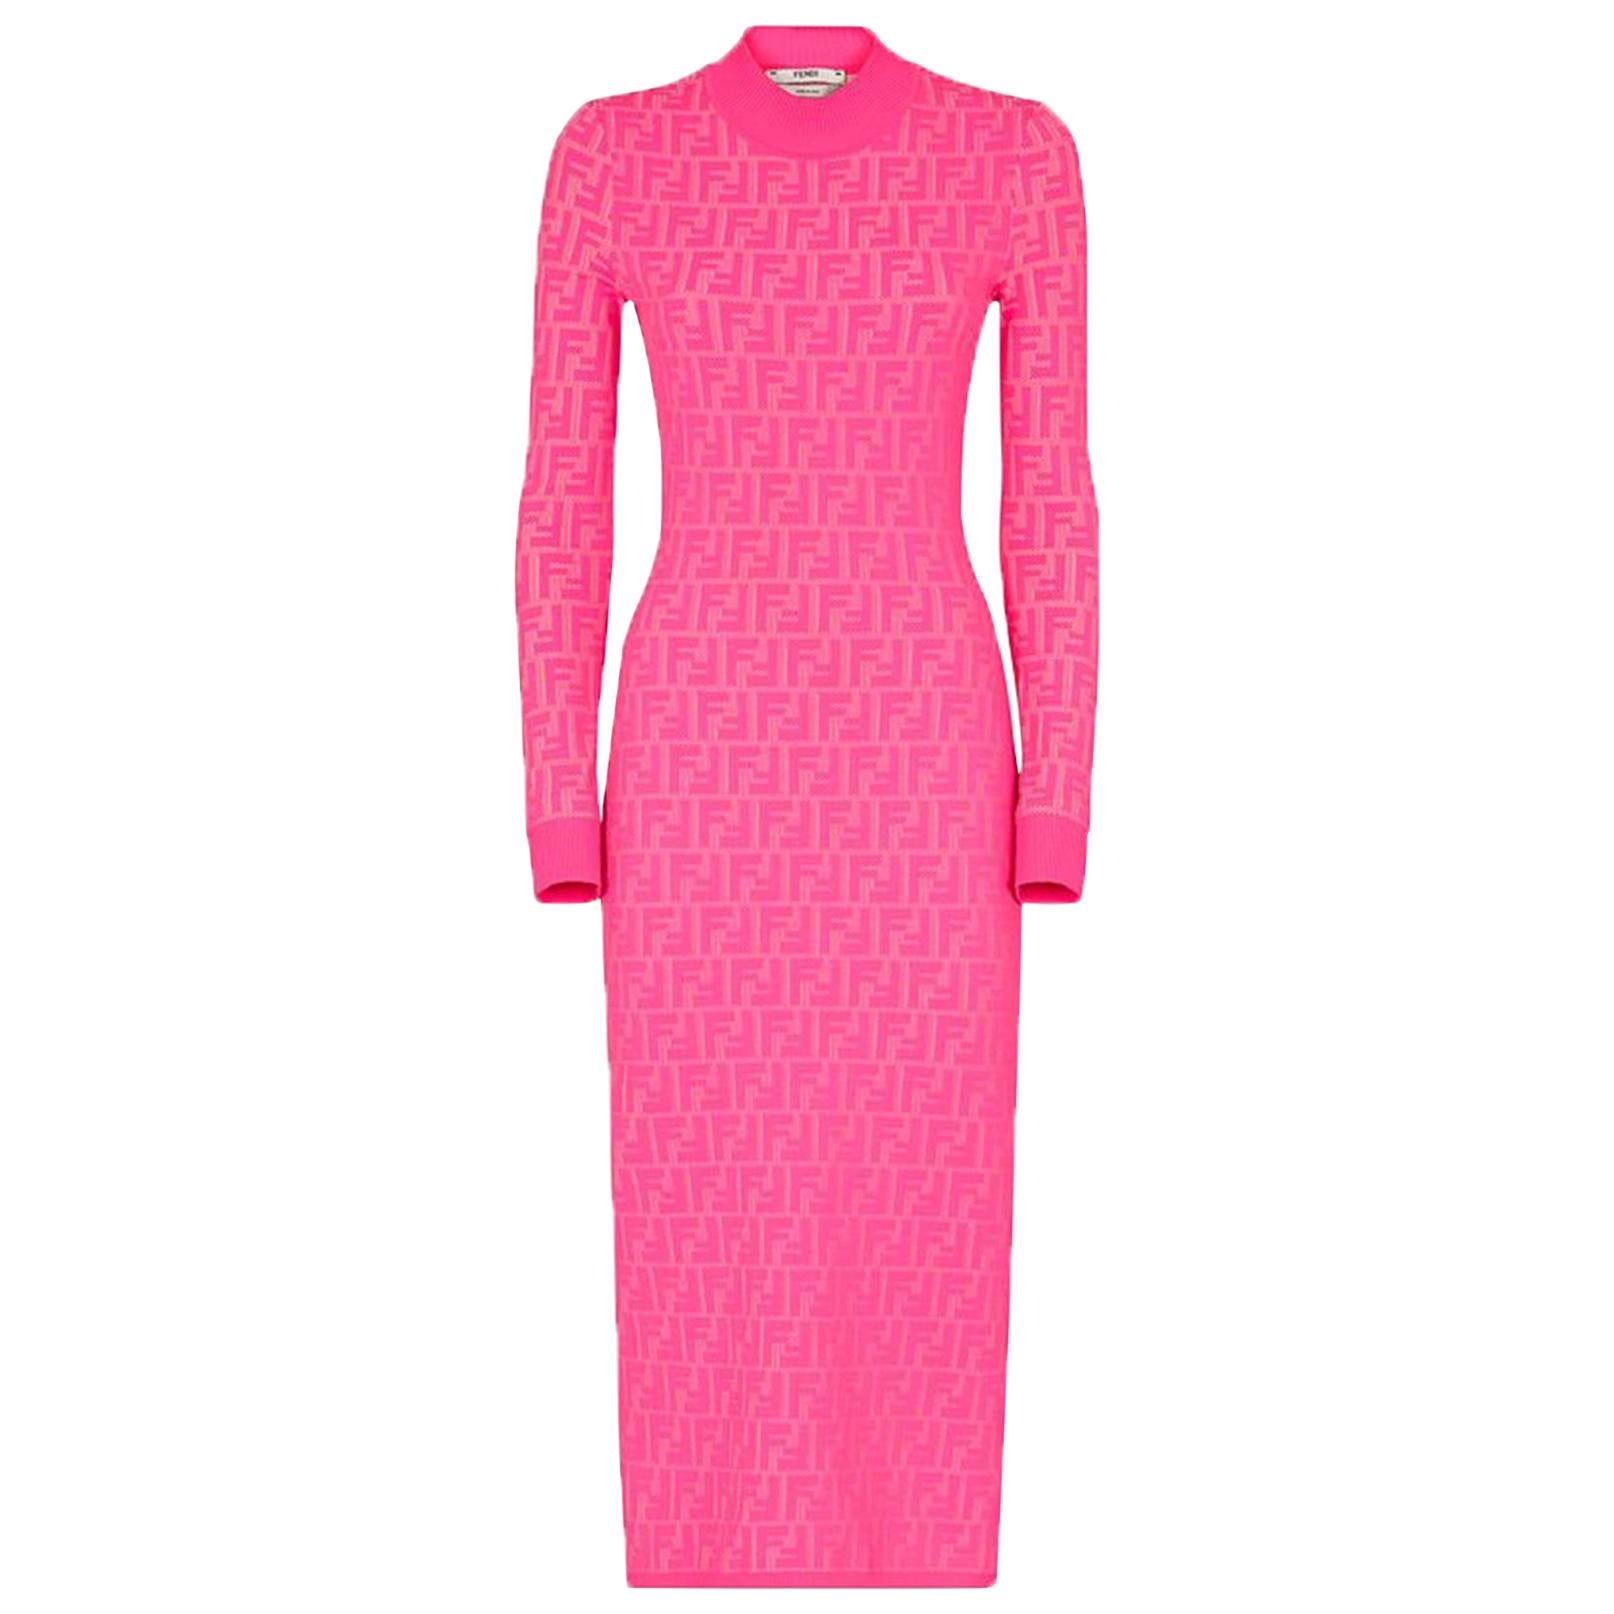 Buy > fendi knit midi dress > in stock